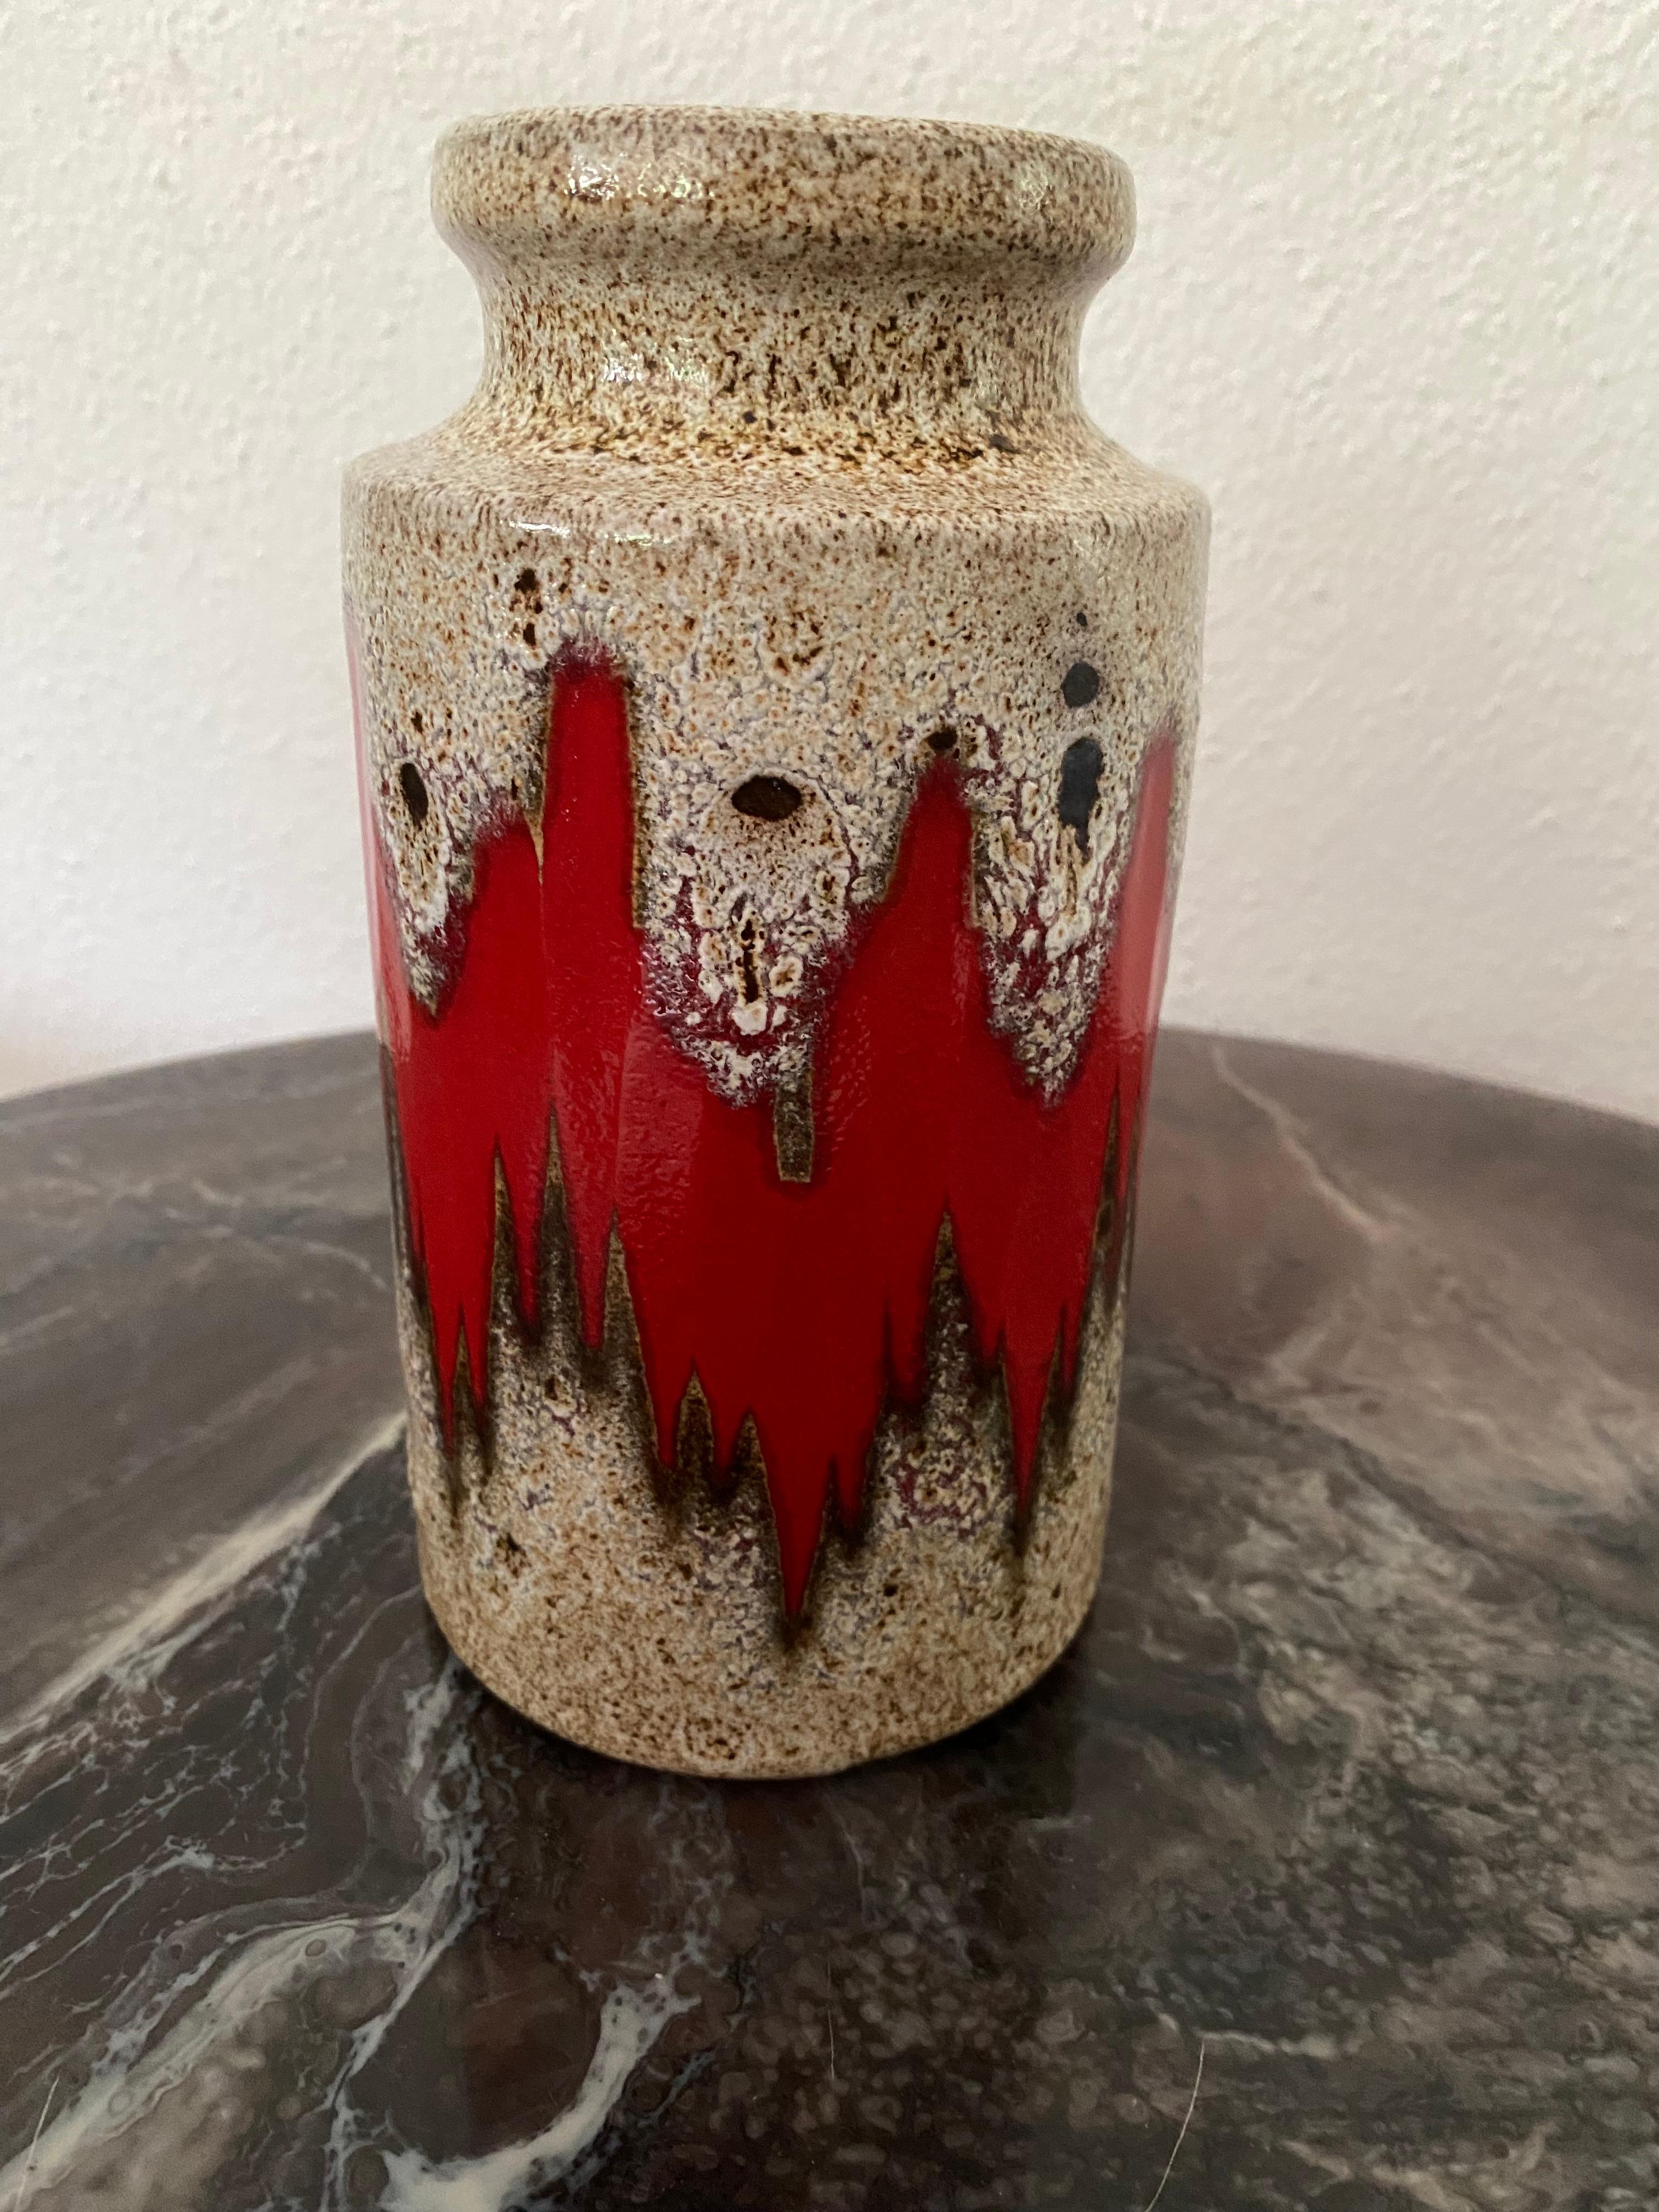 Joli vase coloré des années soixante-dix.